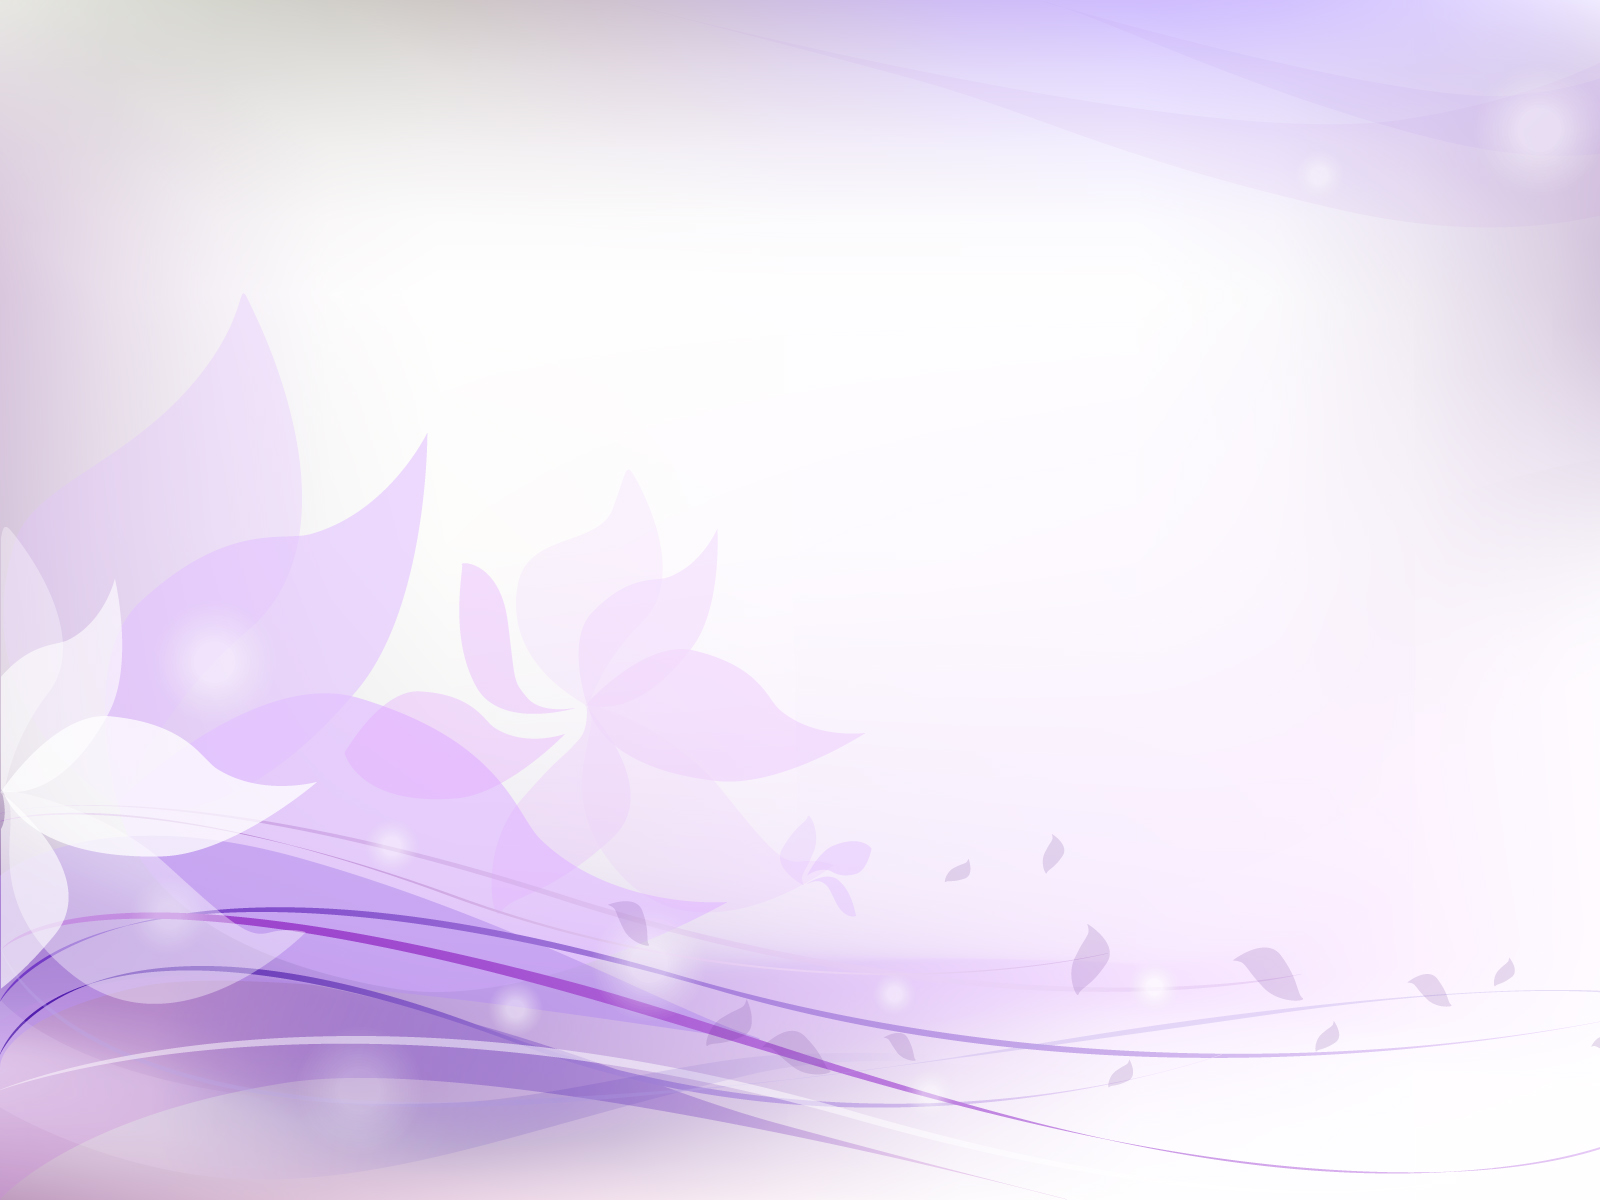 Light Purple Floral Backgrounds, Colors, Flowers, Purple, White Templates